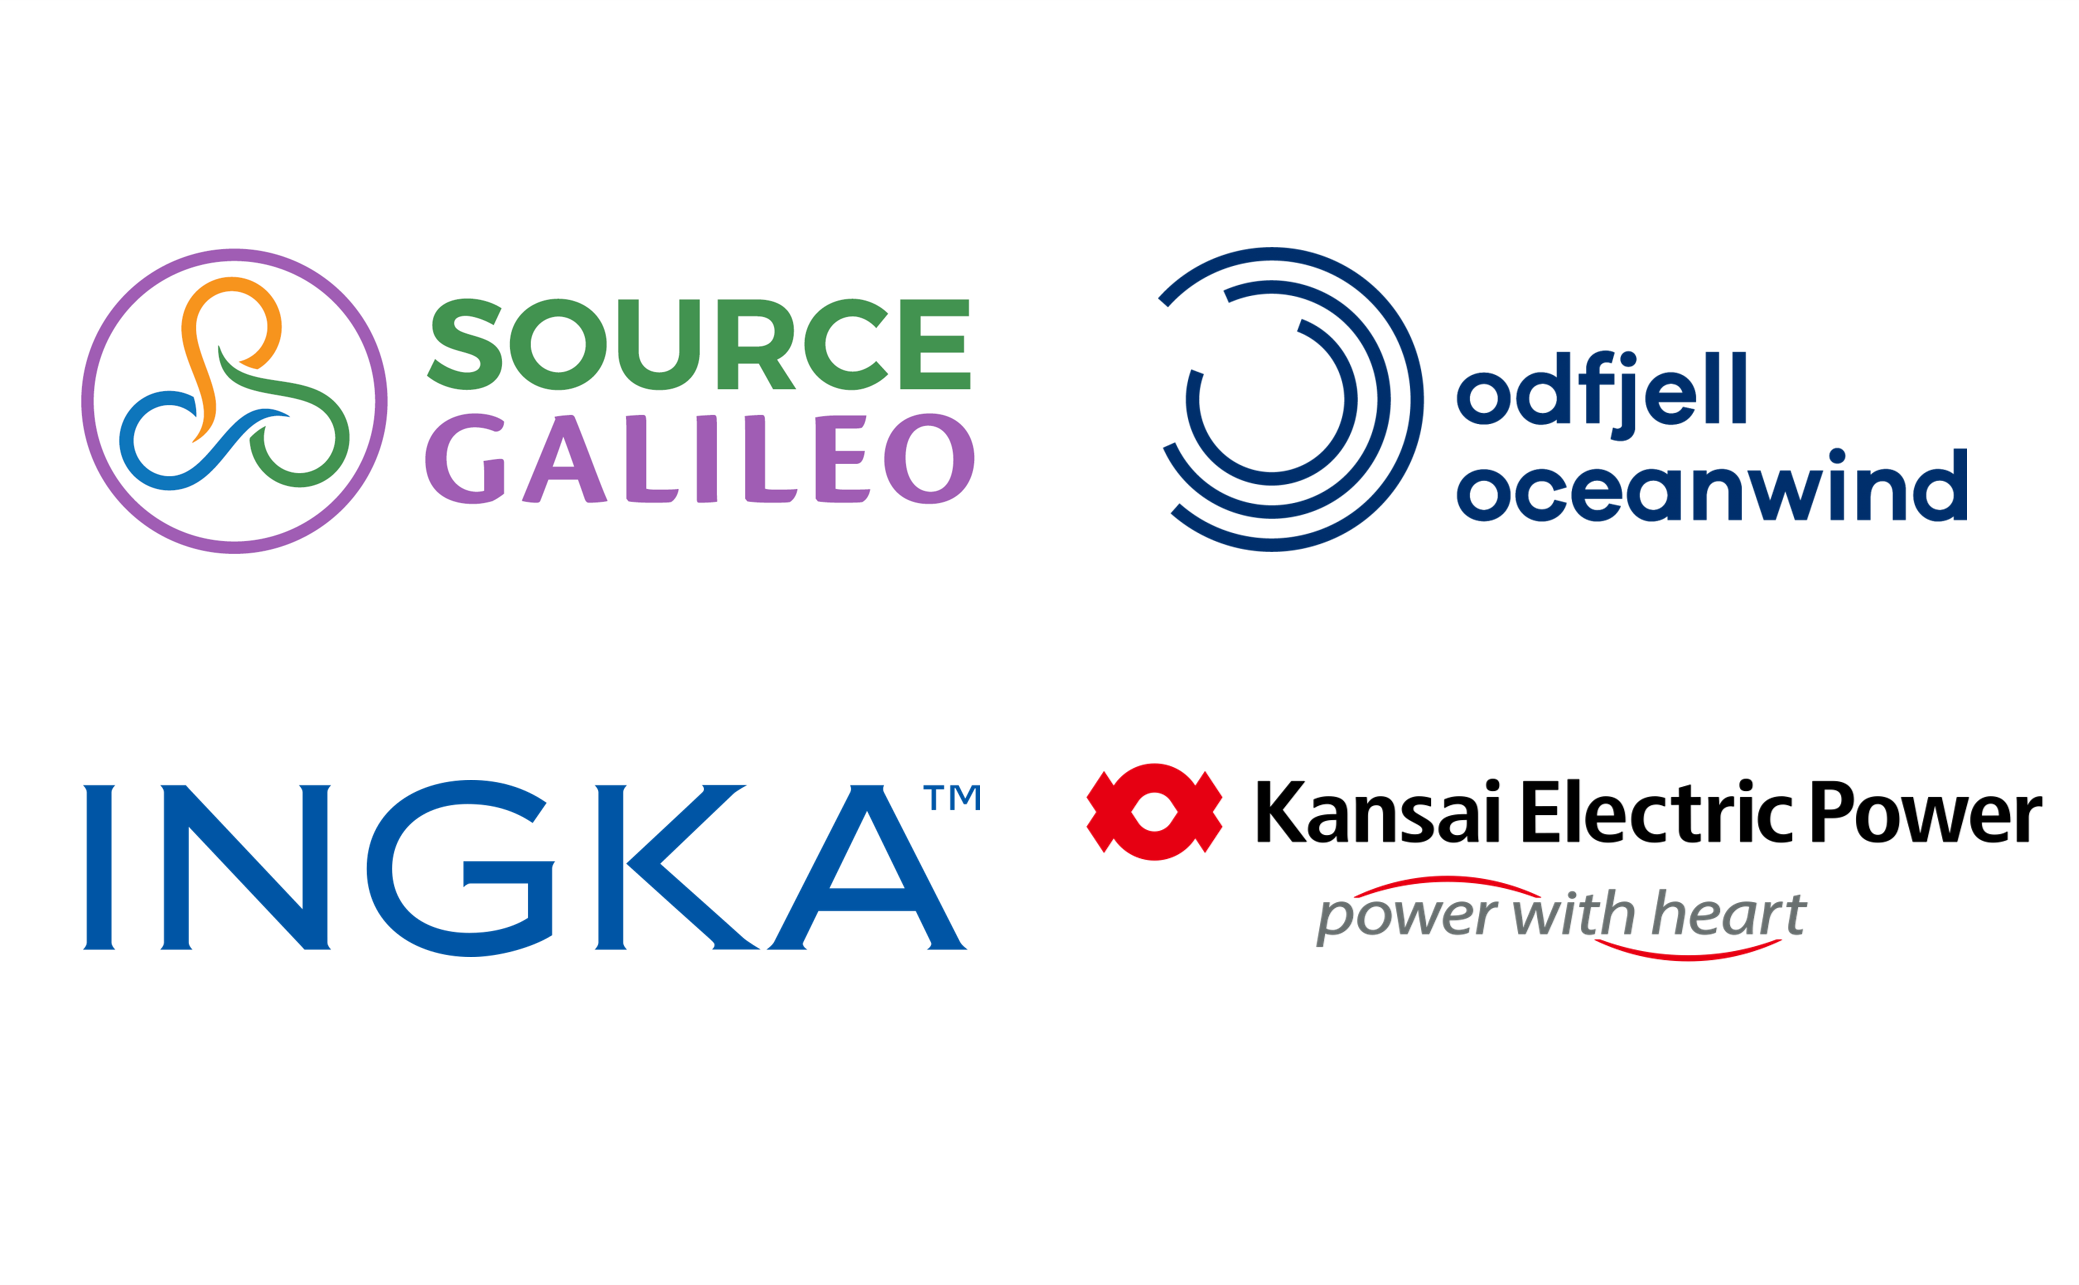 Source Galileo & Odfjell & Ingka & Kansai